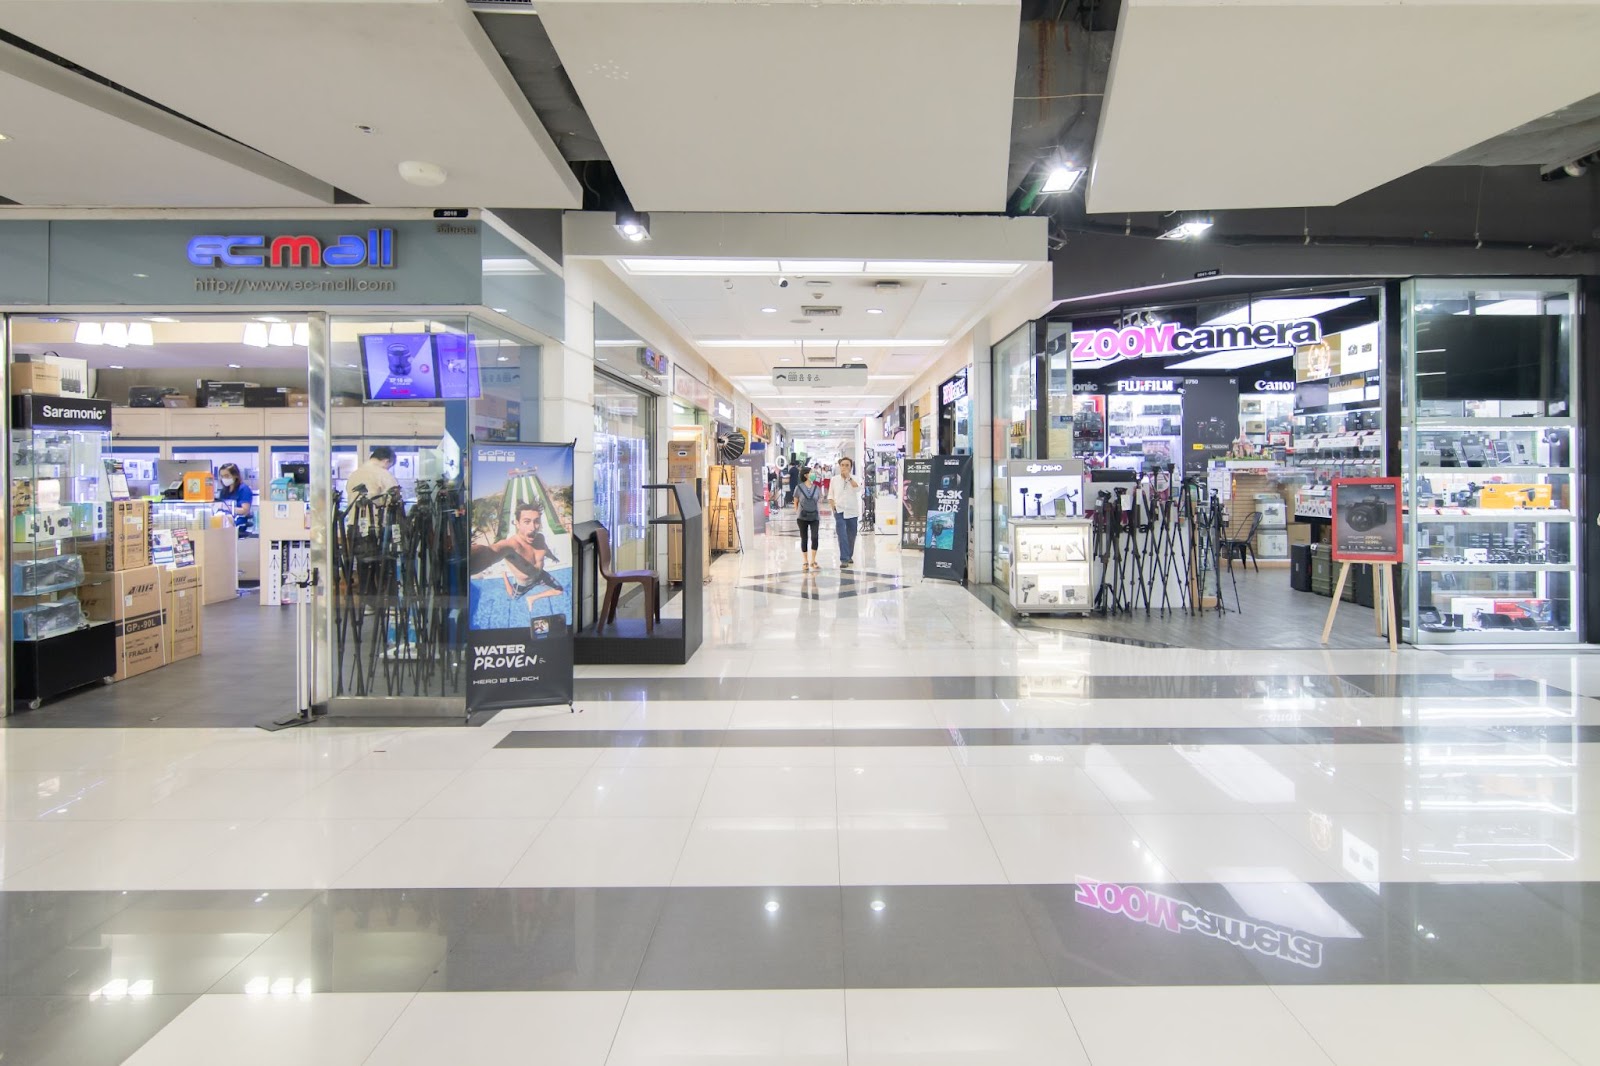 ฟอร์จูนทาวน์ IT Lifestyle Mall ศูนย์ไอทีครบวงจรที่ตอบโจทย์ทุกไลฟสไตล์ แถมเดินทางสะดวก ด้วย MRT สายสีน้ำเงิน สถานีพระราม 9 ทางออก 1 